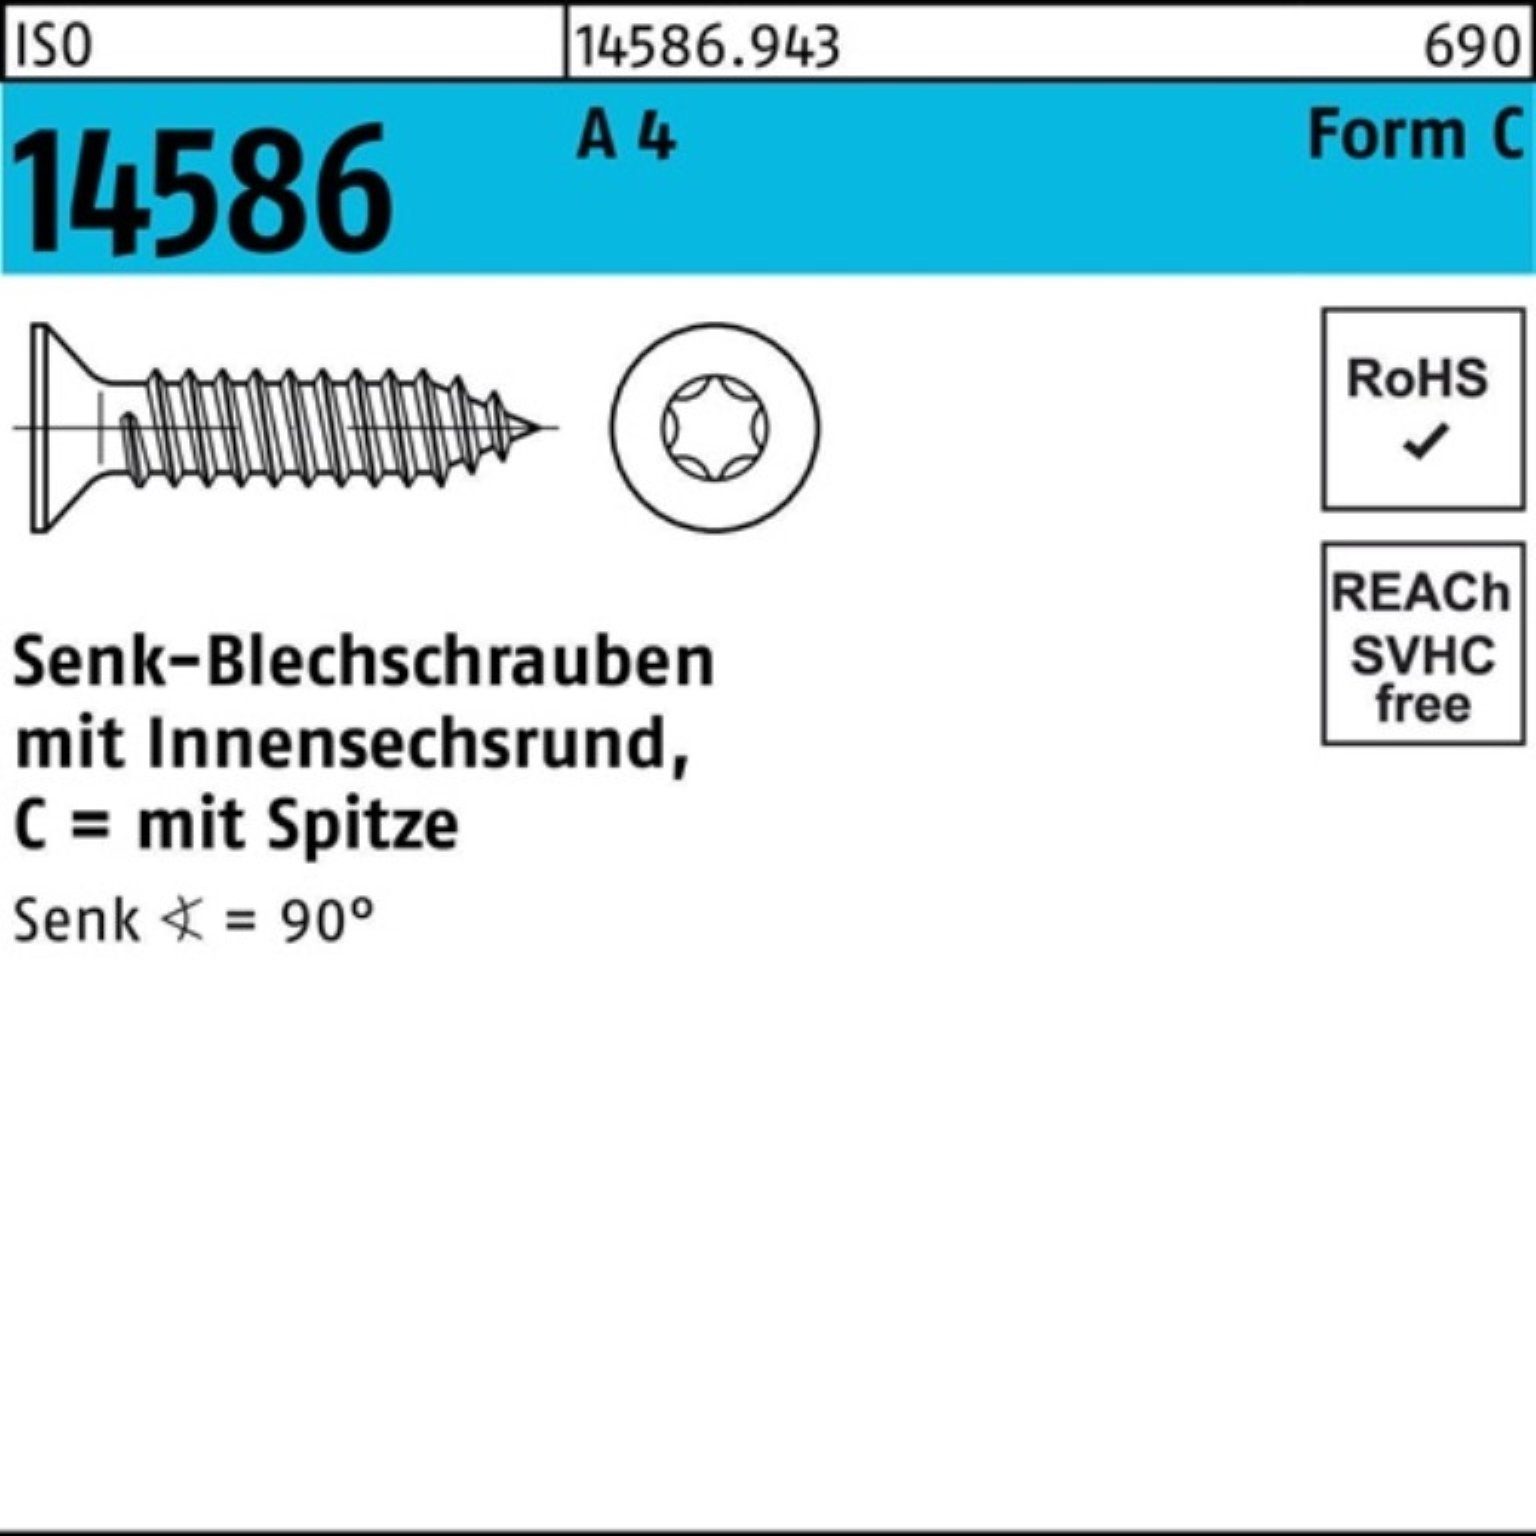 Reyher Schraube 250er Pack Senkblechschraube 250 A 80-T25 4 ISR/Spitze 14586 ISO 5,5x